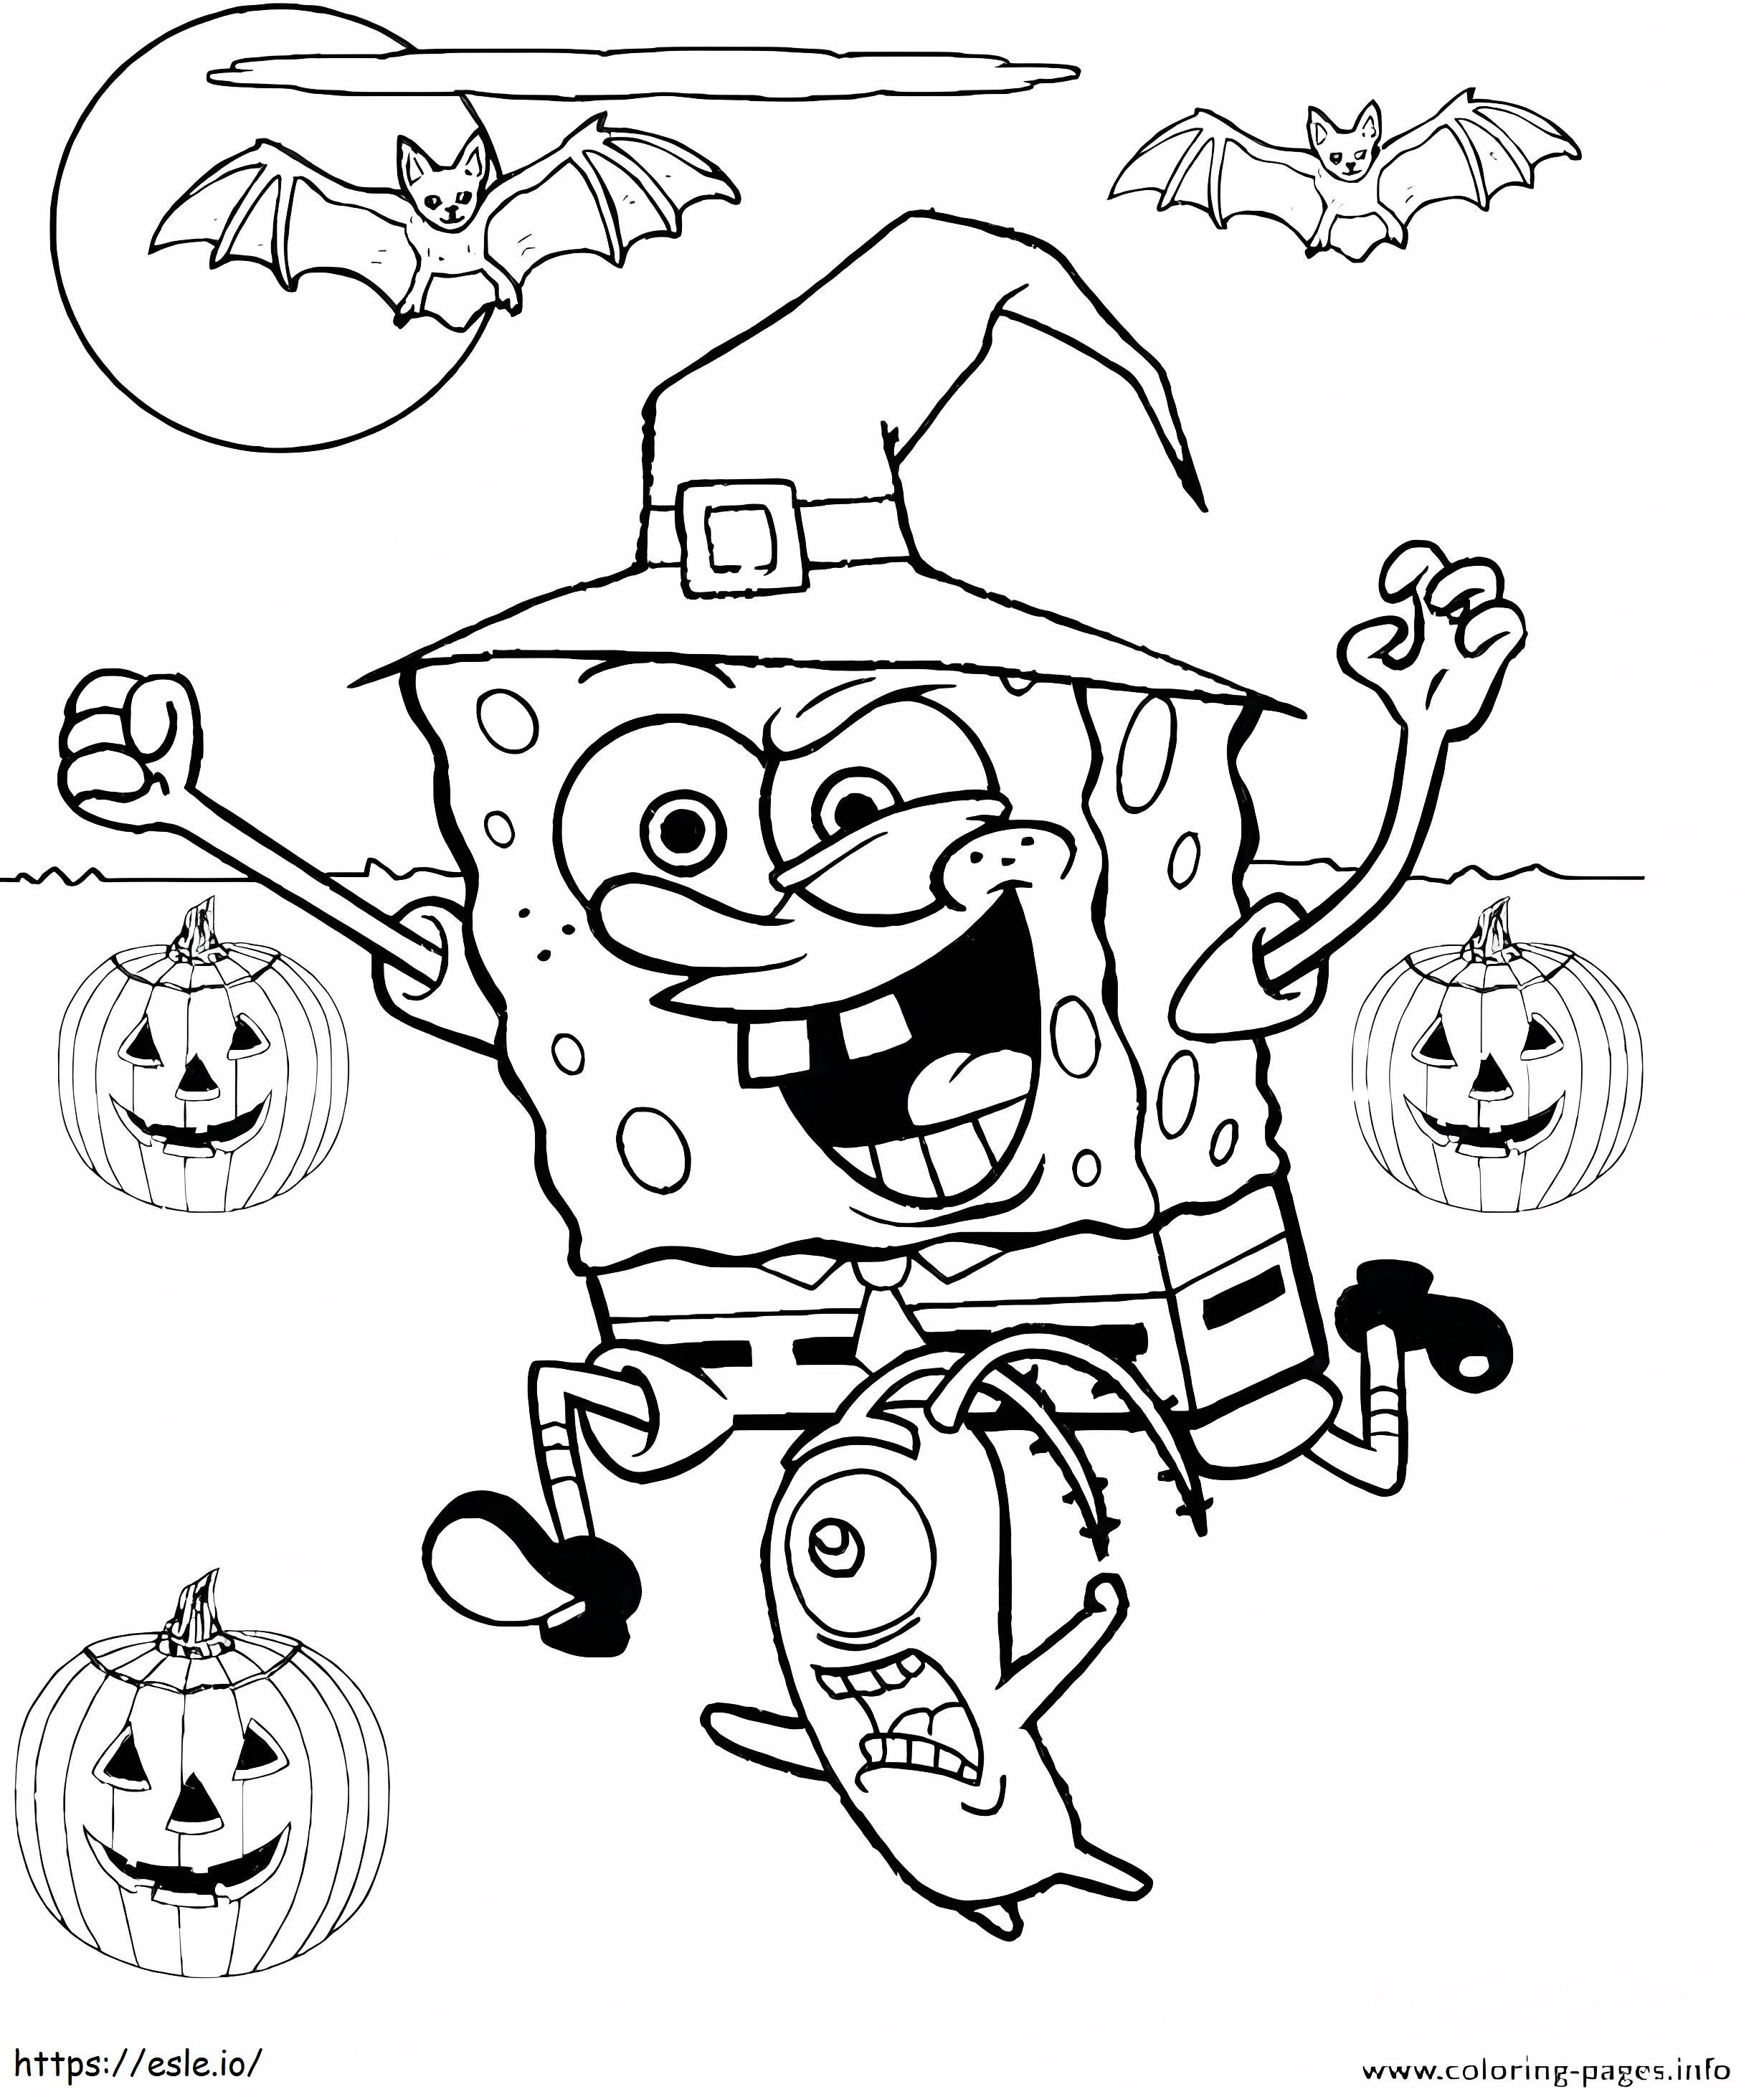 1539681012 Vampir Ücretsiz Yazdırılabilir Perili Ev Okul Öncesi Sayfası Sisli Çocuklar Spooky Disney Stitch boyama